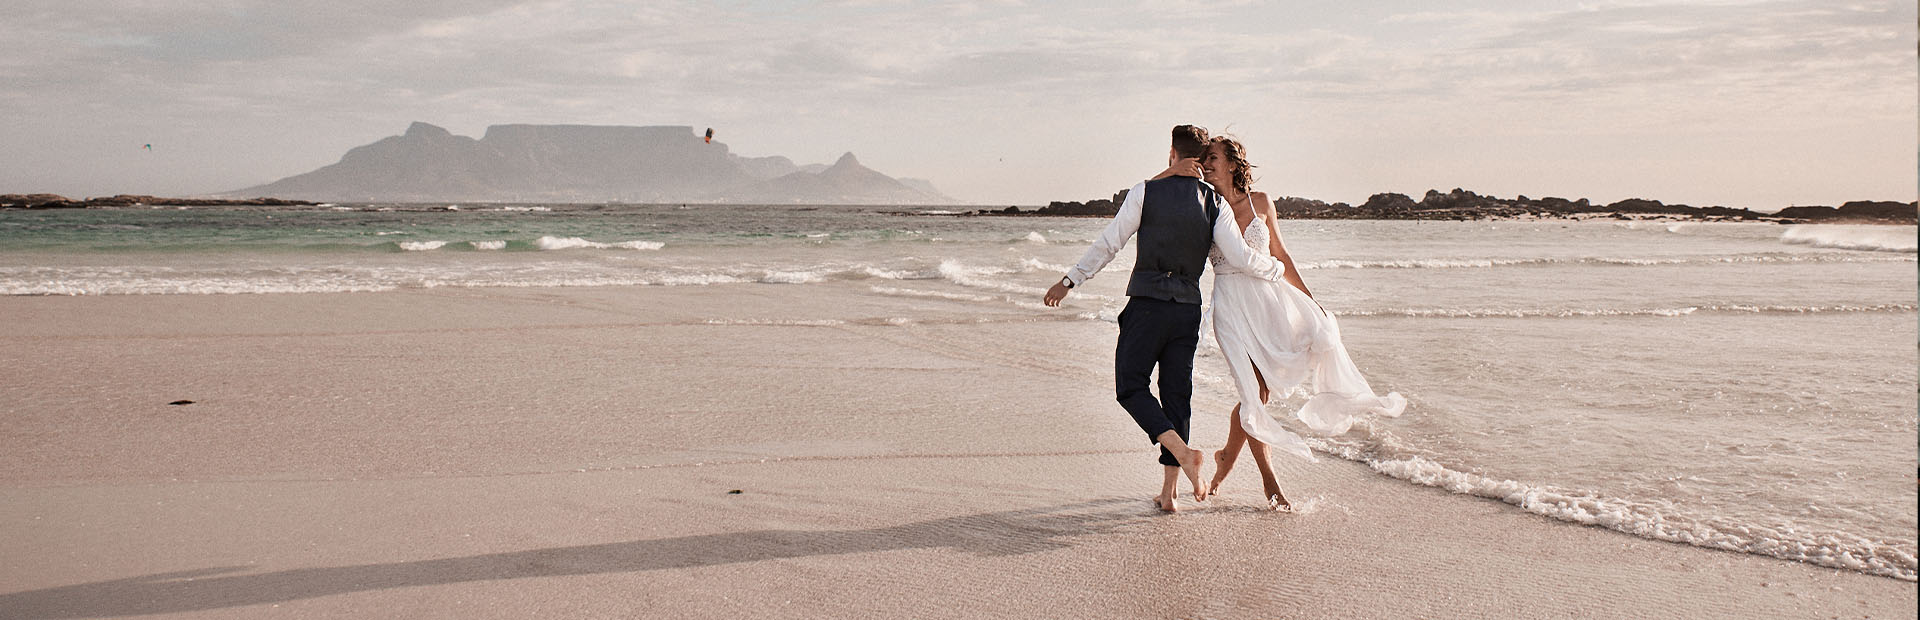 Molteno Couture designer bridal cape town beach wedding